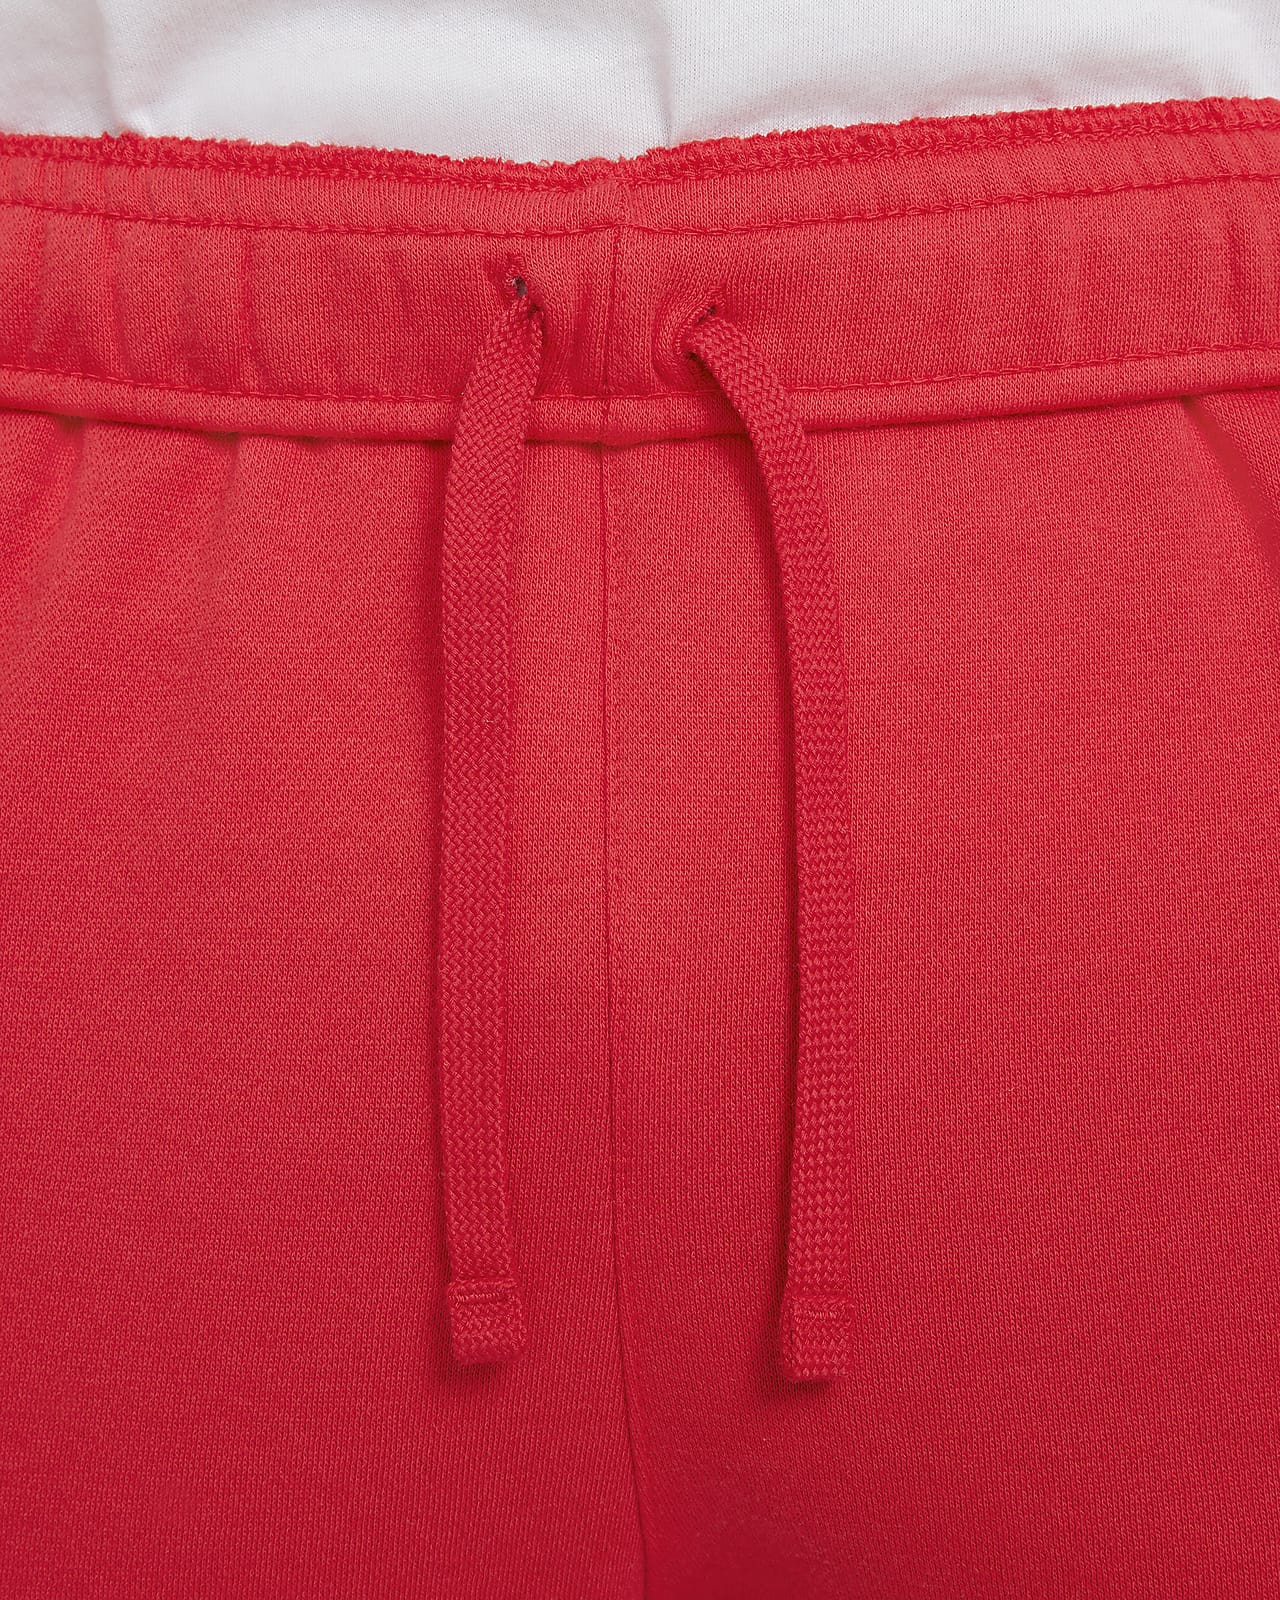 La Boutique GDL - Pants nike original tela rompevientos $150 talla ch-M